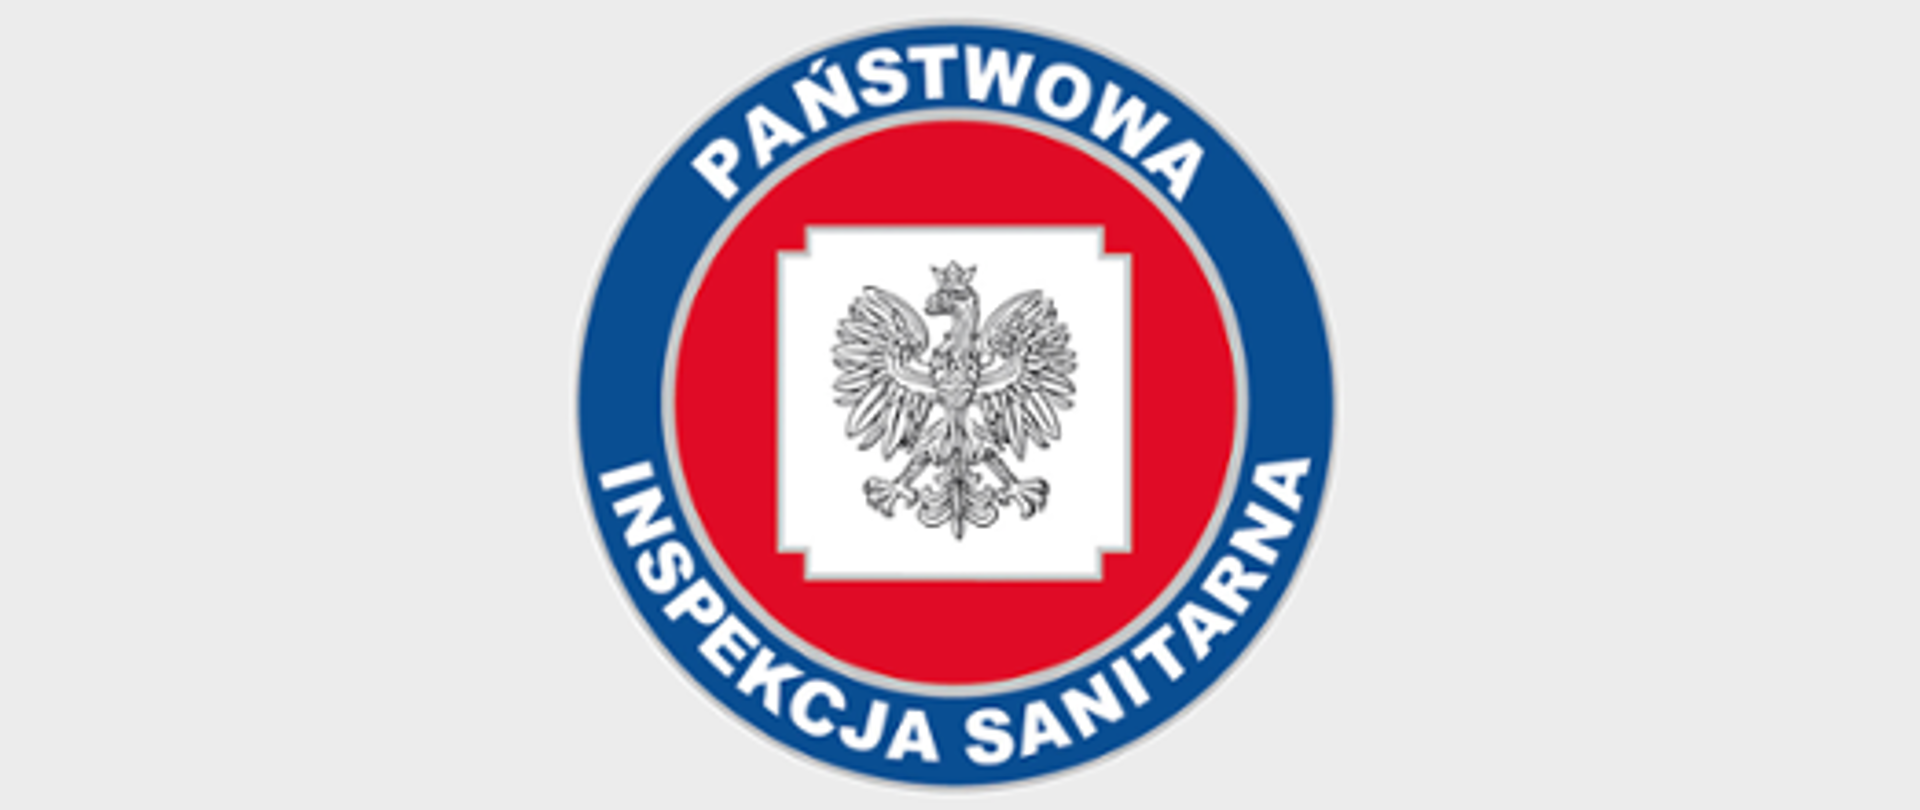 Logo Państwowej Inspekcji Sanitarnej, niebieska obręcz z napisem Państwowa Inspekcja Sanitarna, na czerwonym tle w środku orzełek w koronie